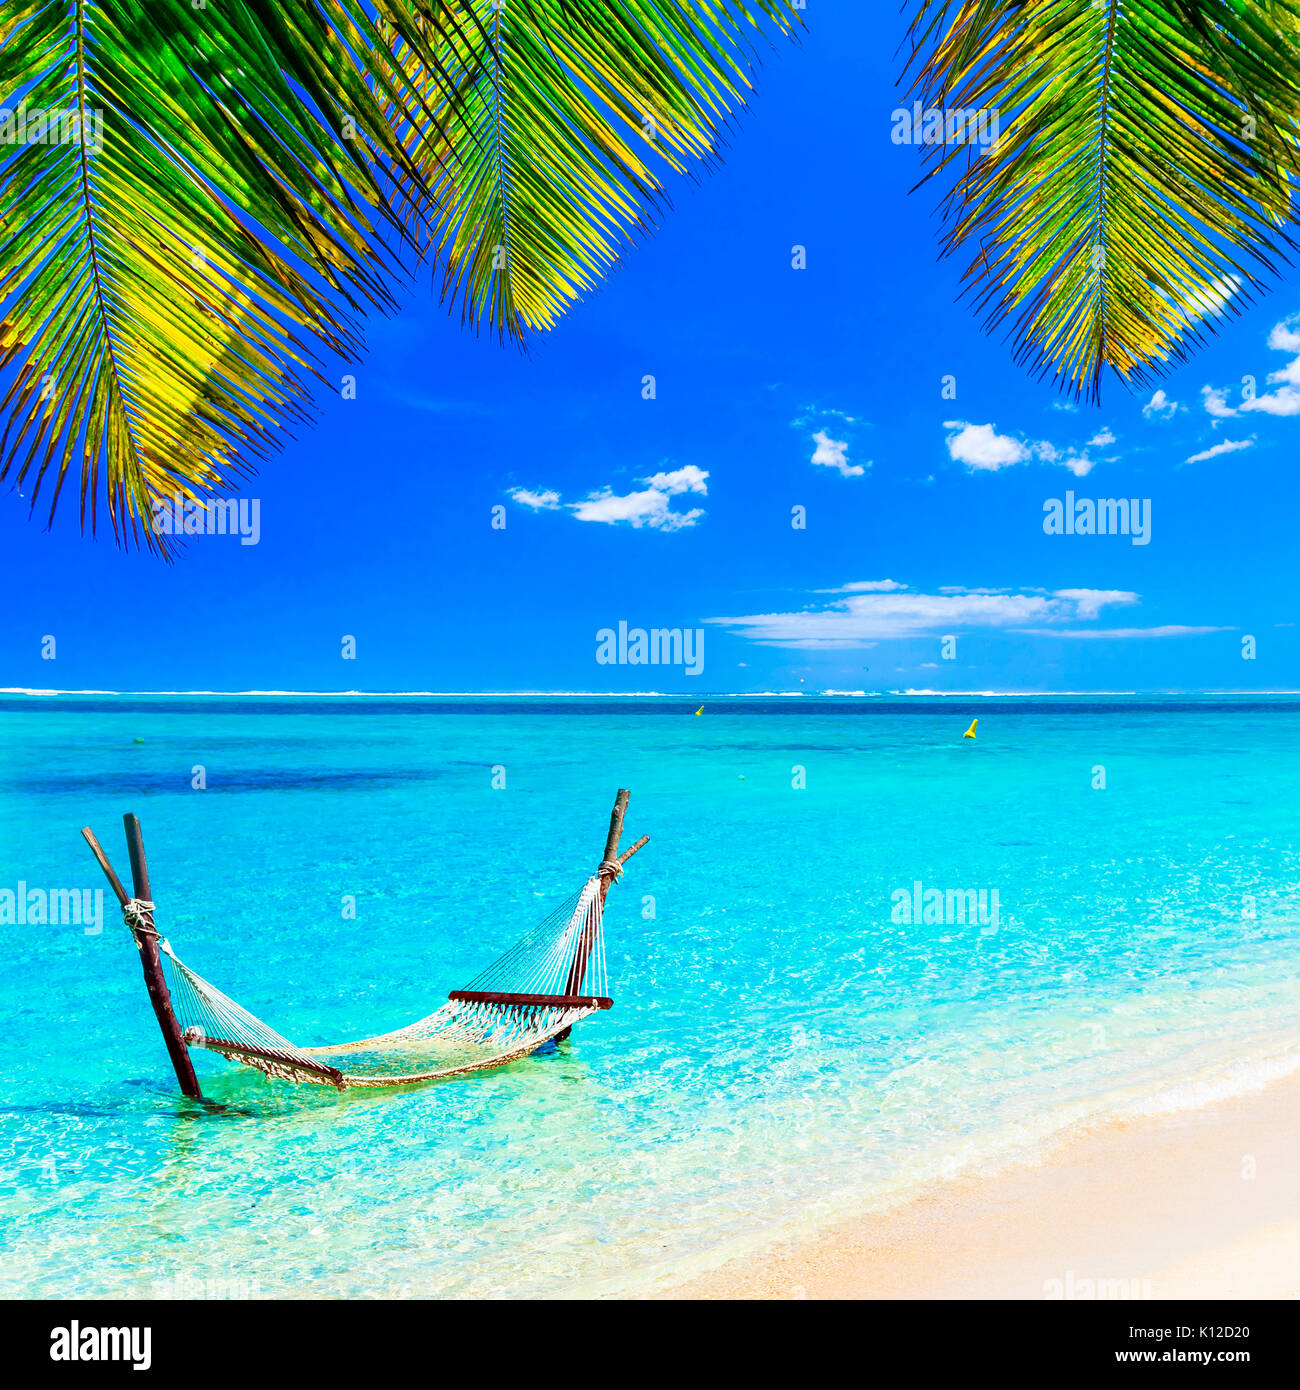 Paradis tropical, avec vue sur la mer d'azur,hamac et palmier,l'île Maurice. Banque D'Images